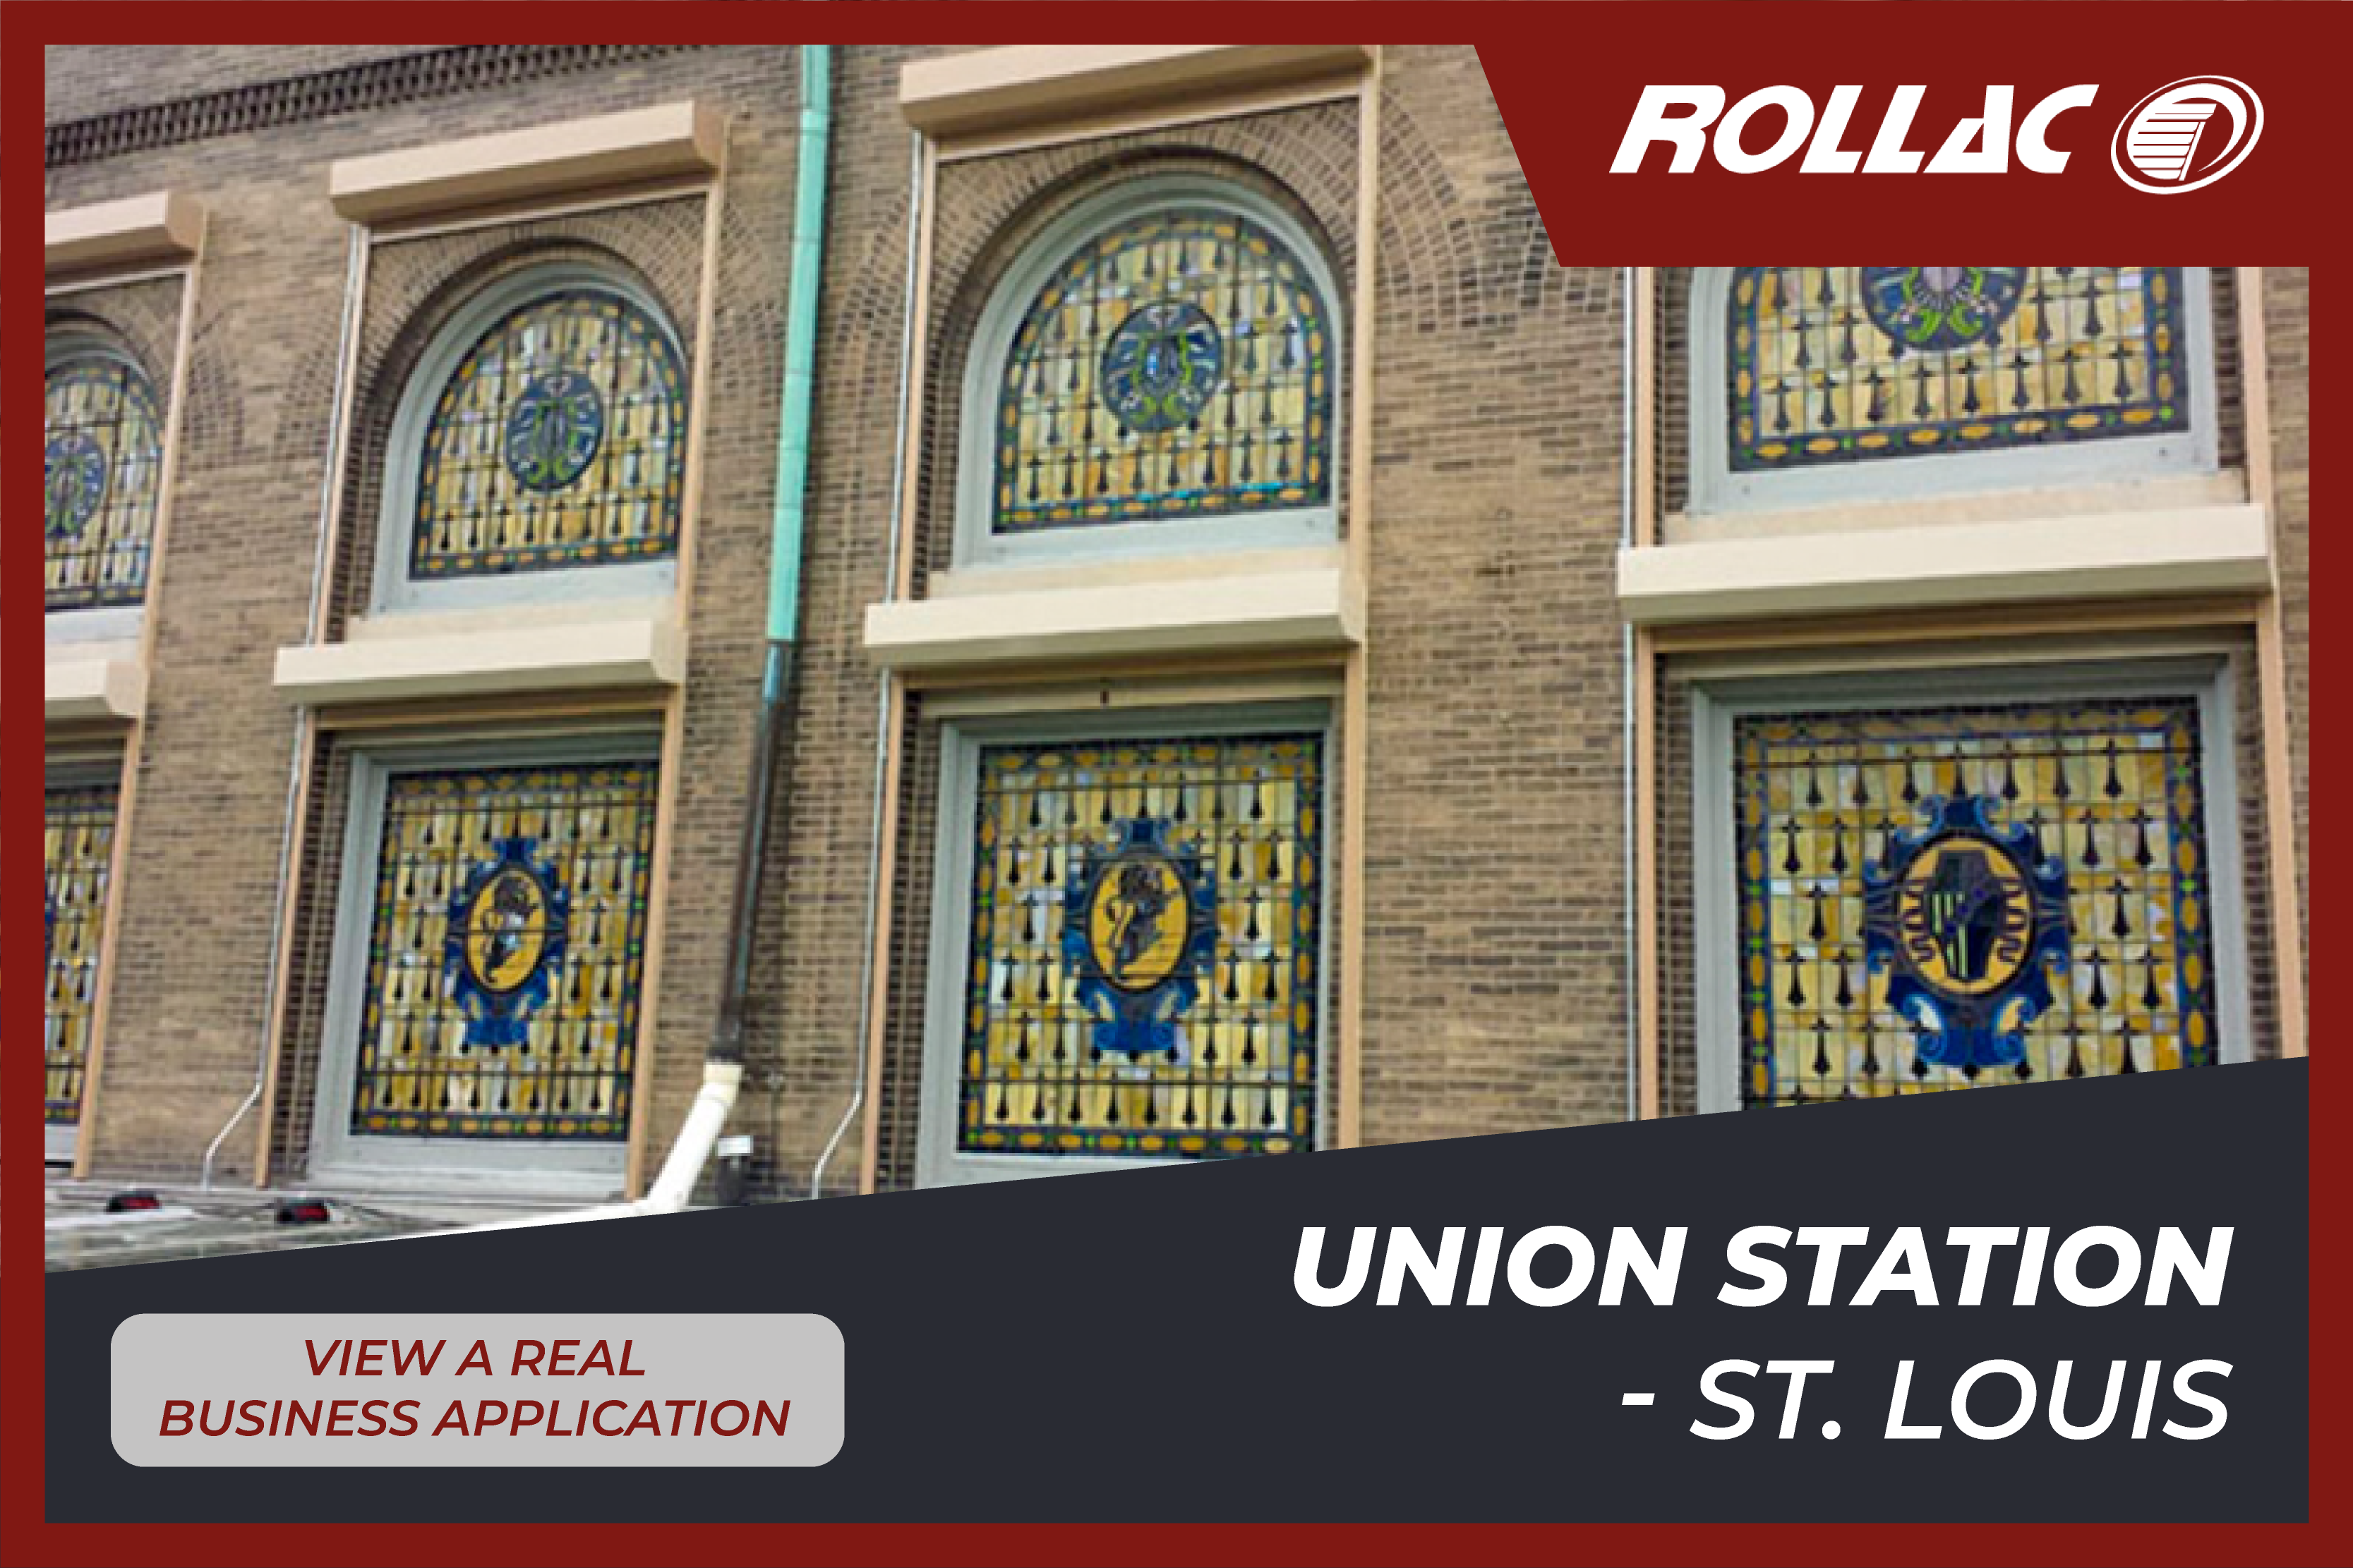 Union Station - St. Louis